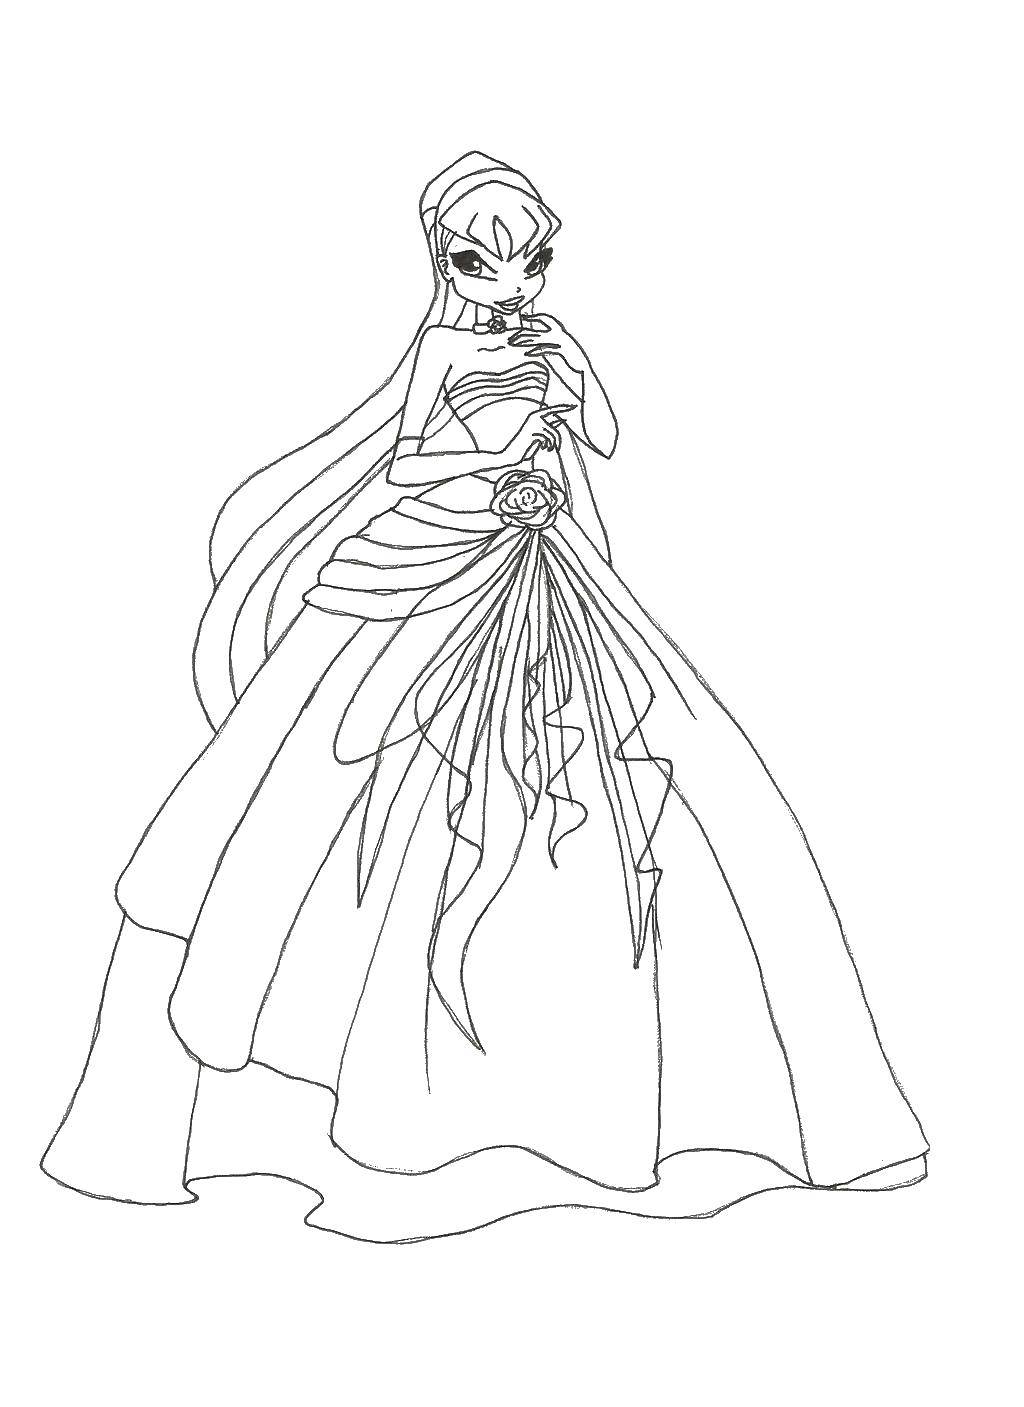 Опис: розмальовки  Стелла в бальній сукні. Категорія: Вінкс. Теги:  Персонаж з мультфільму, Winx.